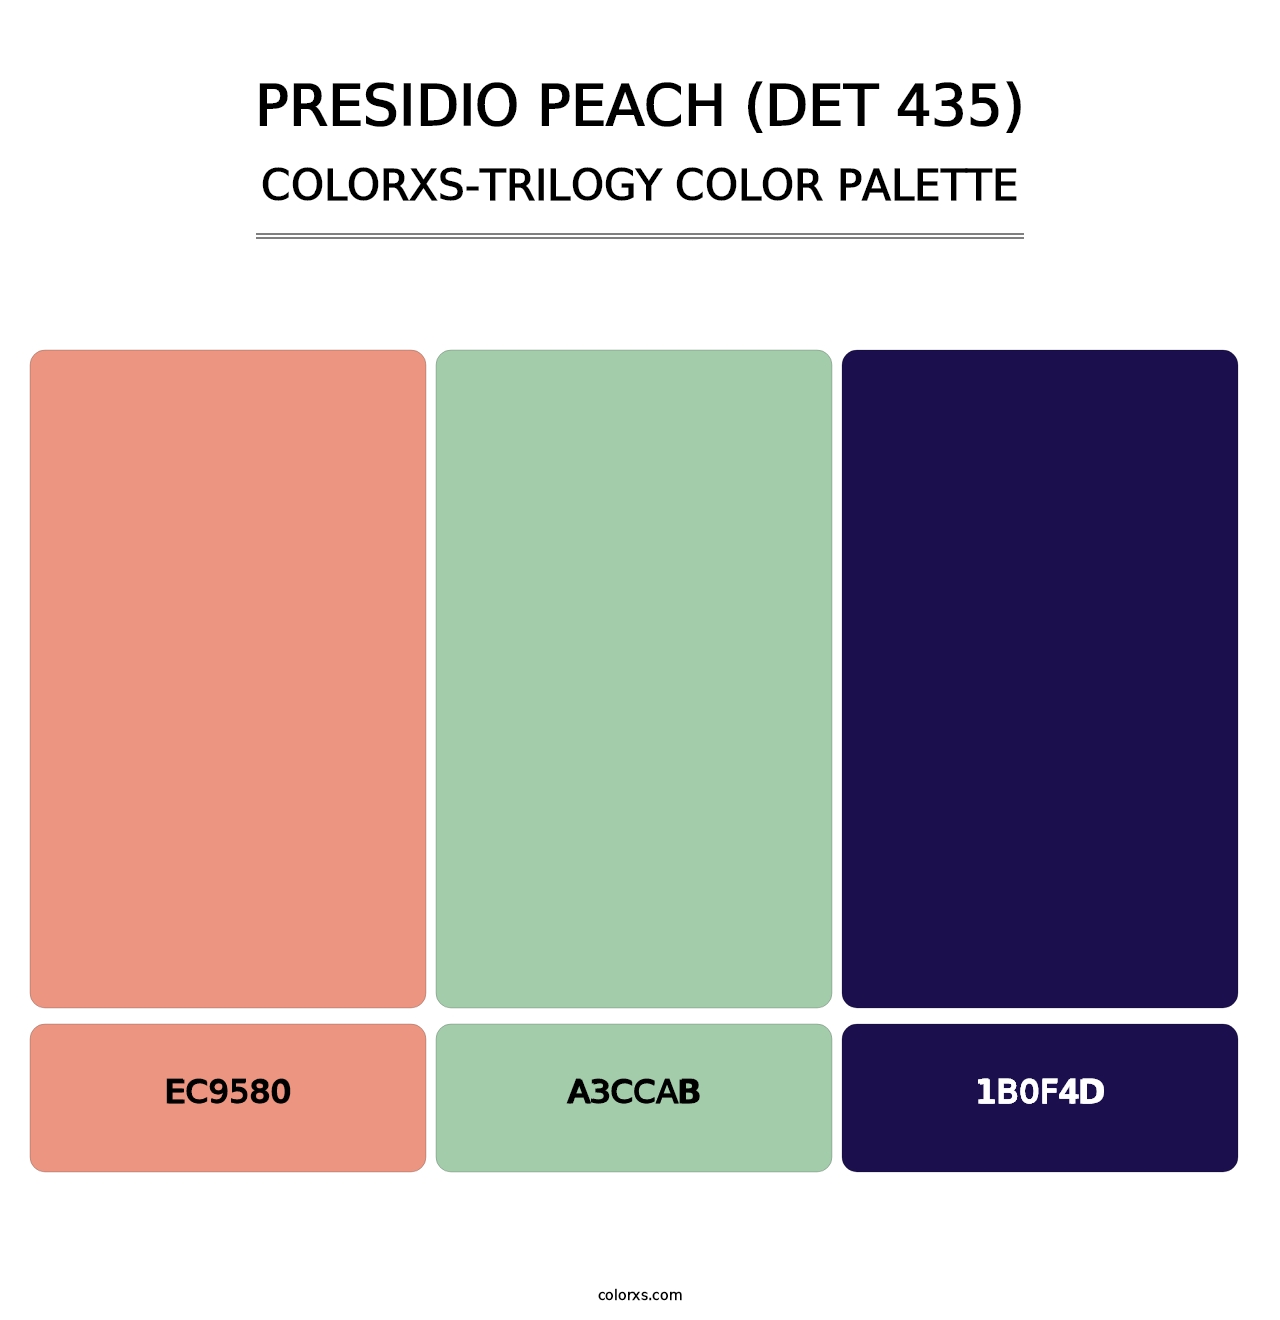 Presidio Peach (DET 435) - Colorxs Trilogy Palette